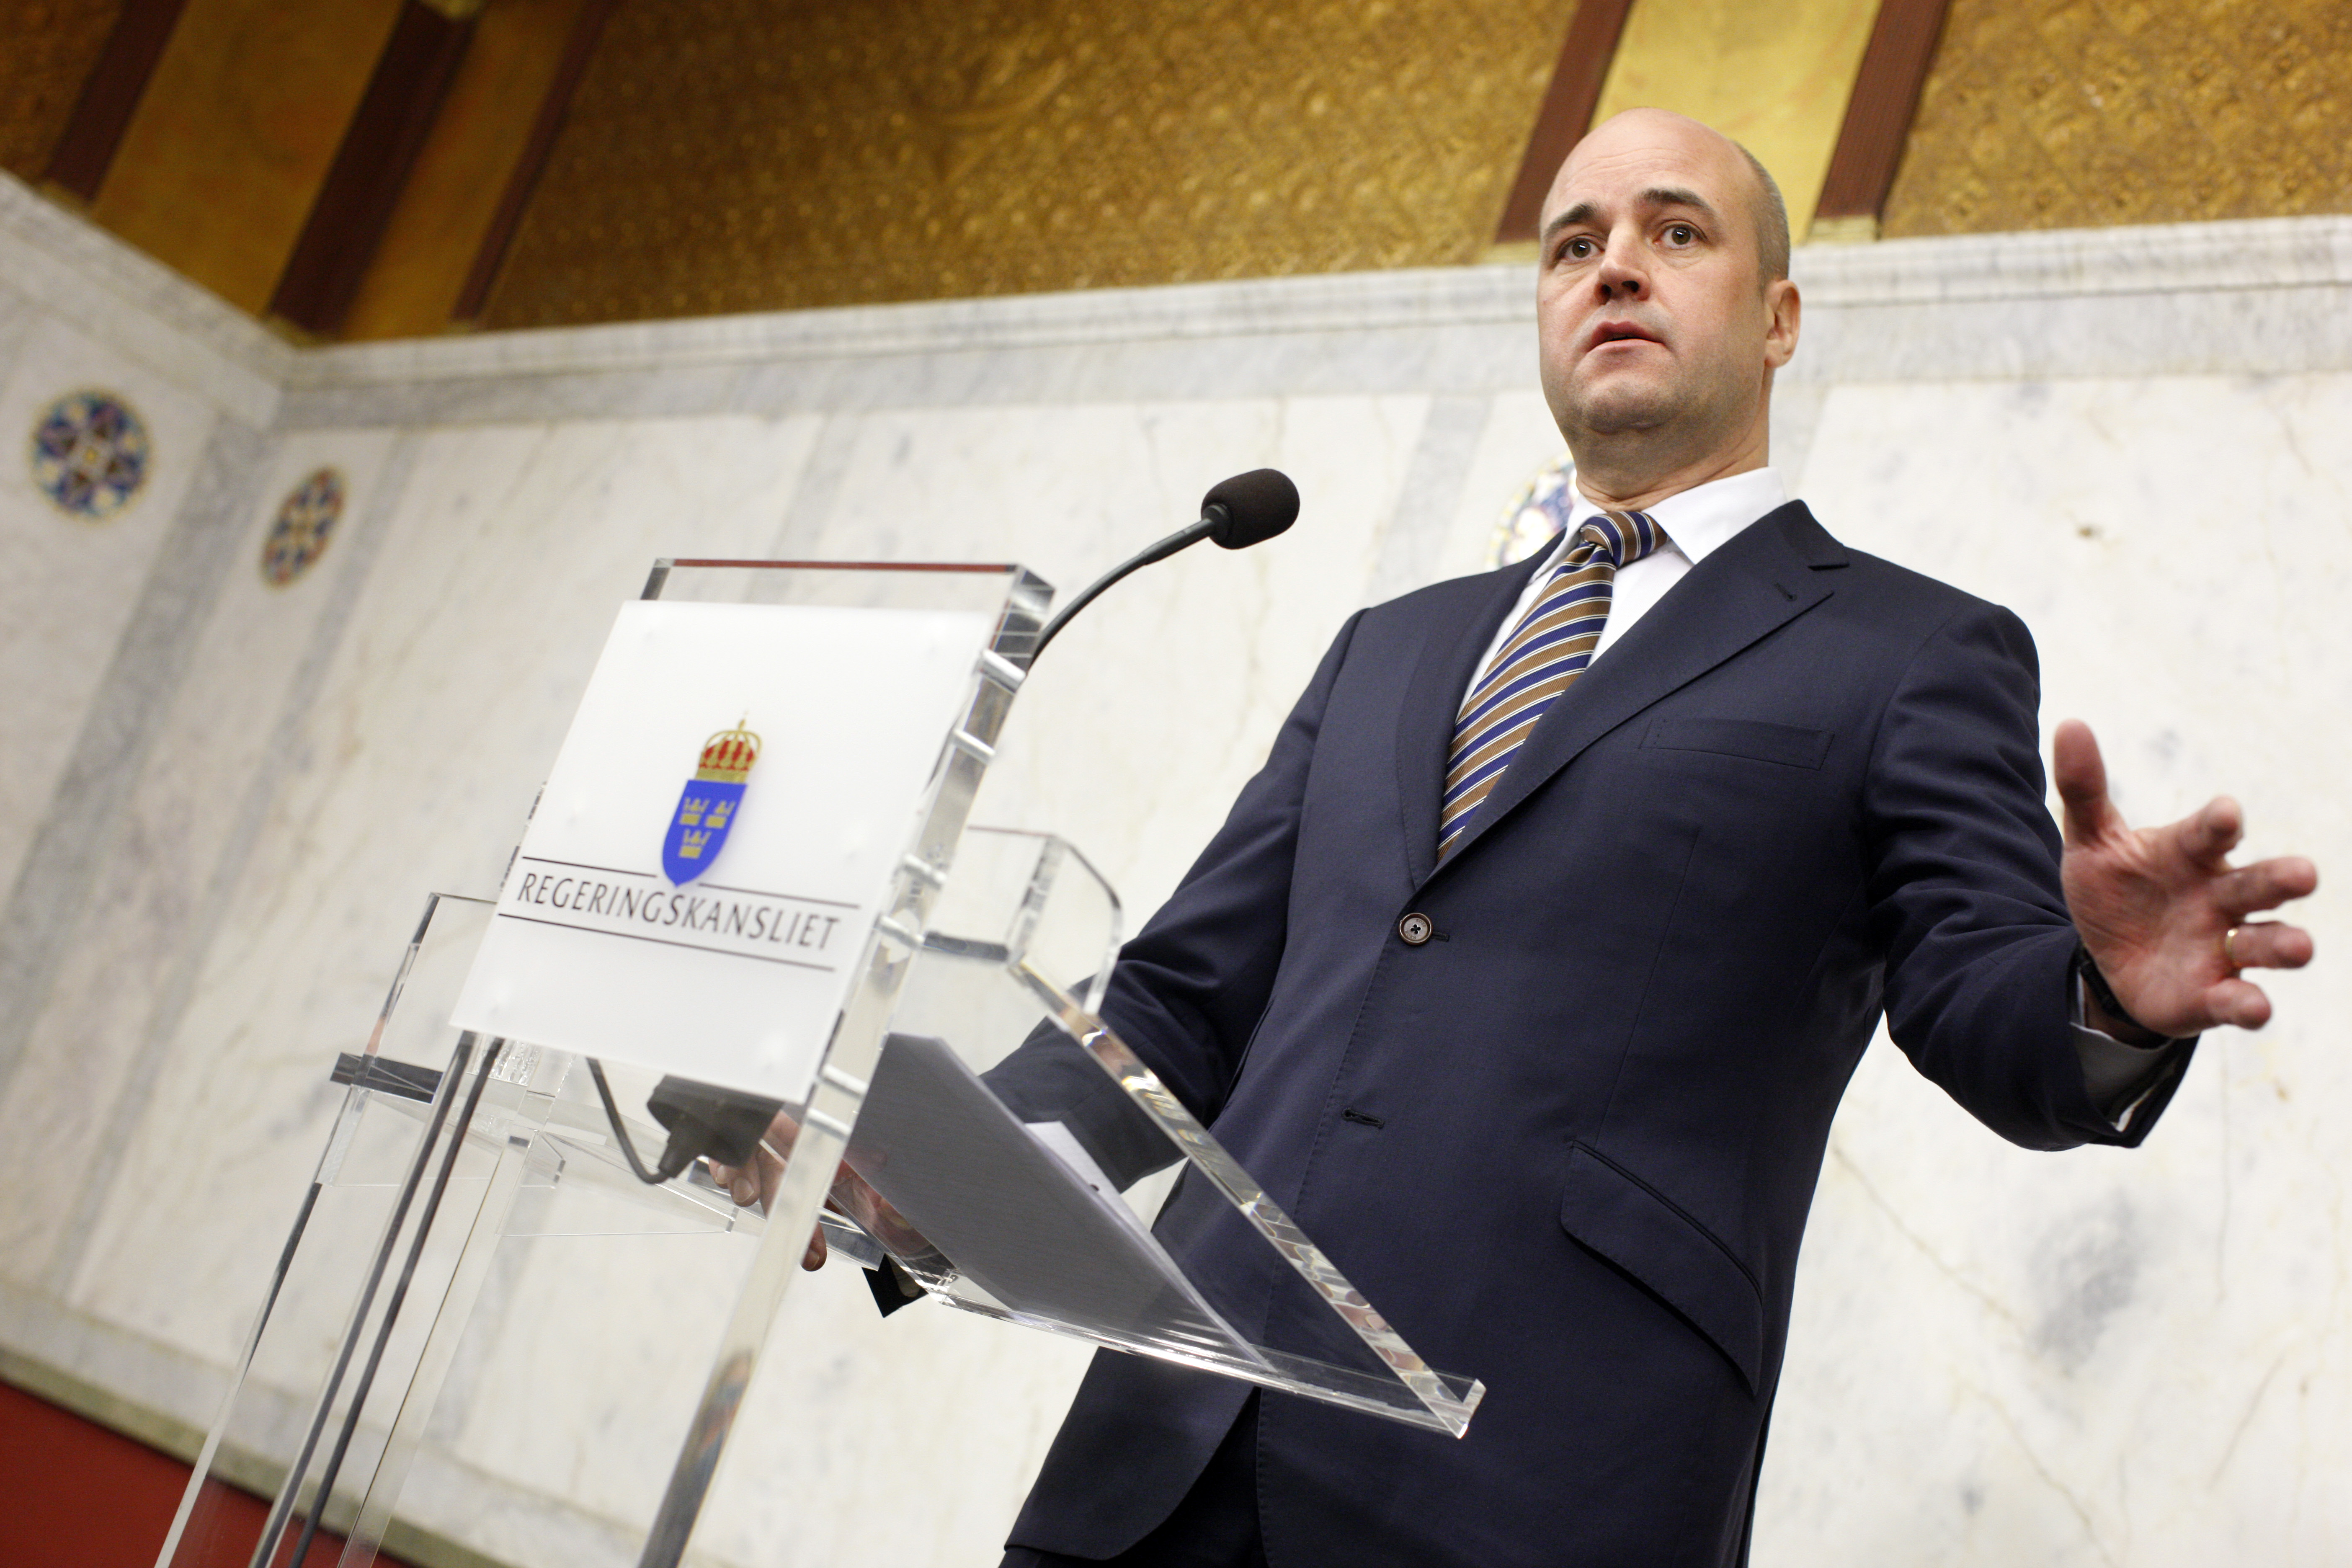 Förhandlingar, Ministerpost, Fredrik Reinfeldt, Minister, Regering